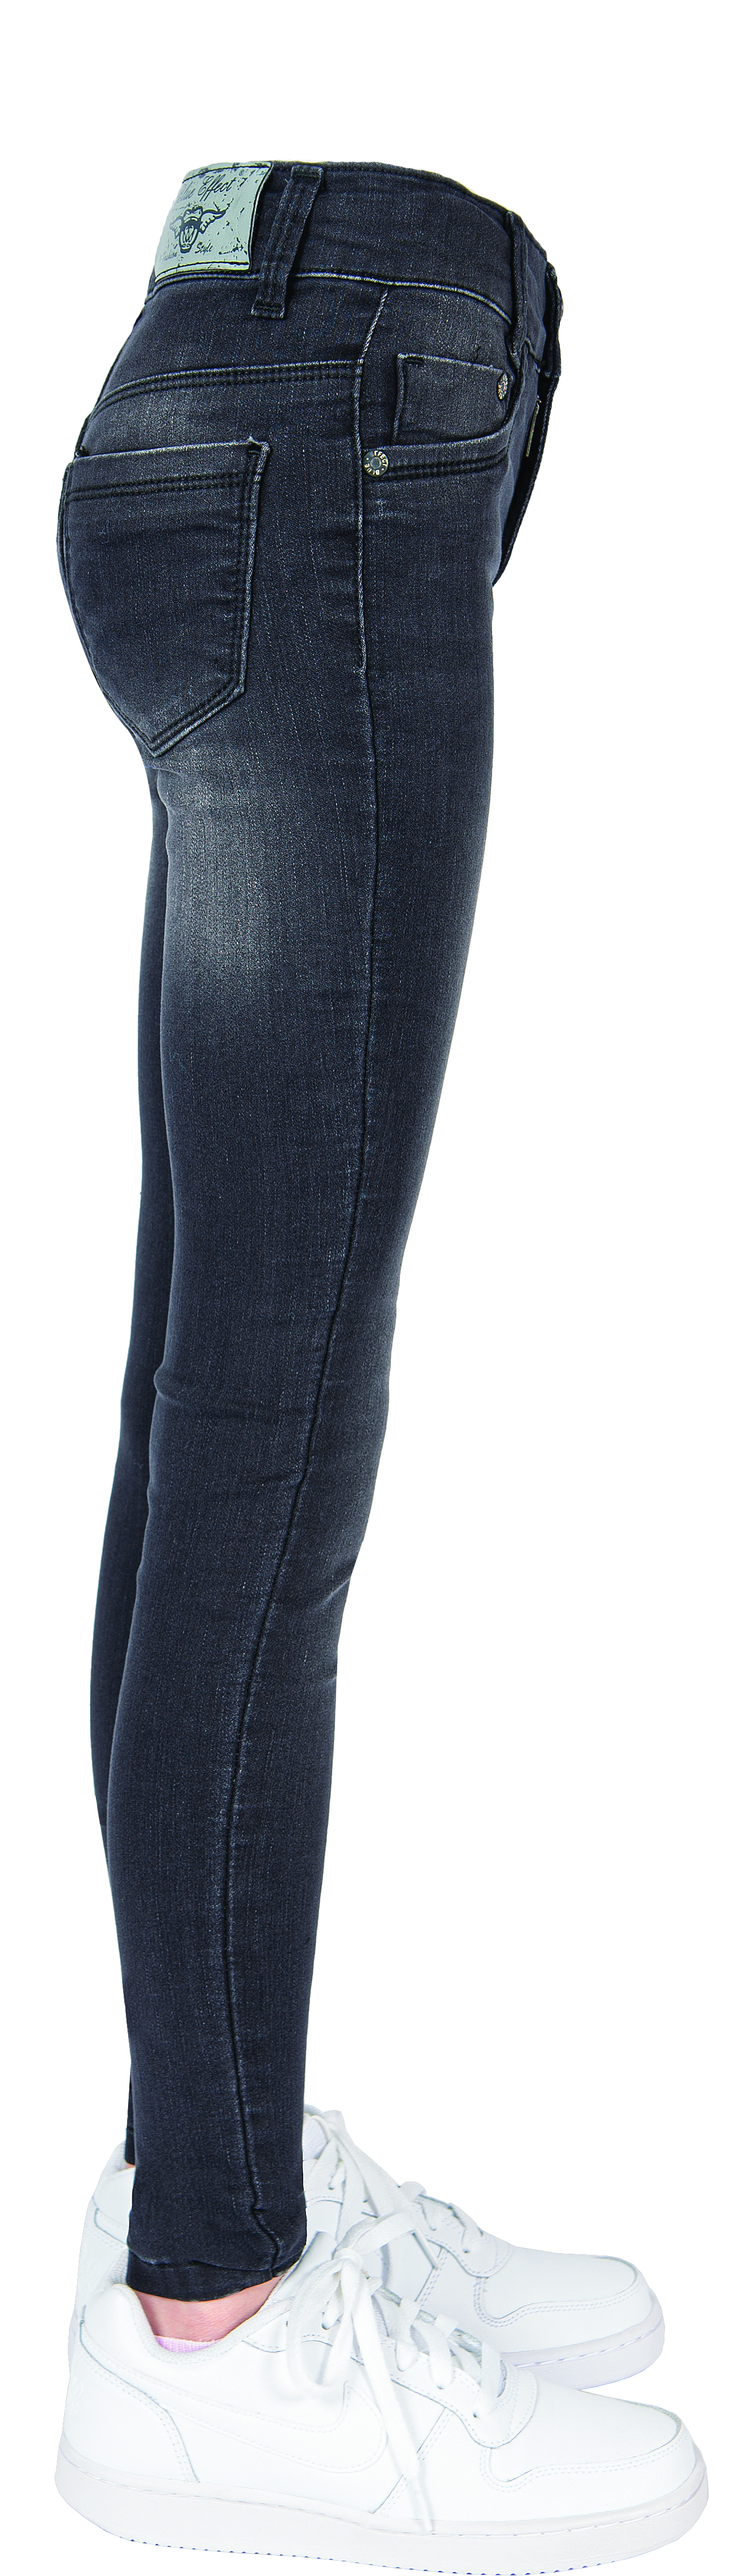 1123-NOS Girls Jeans  Super-Slim, Ultrastretch